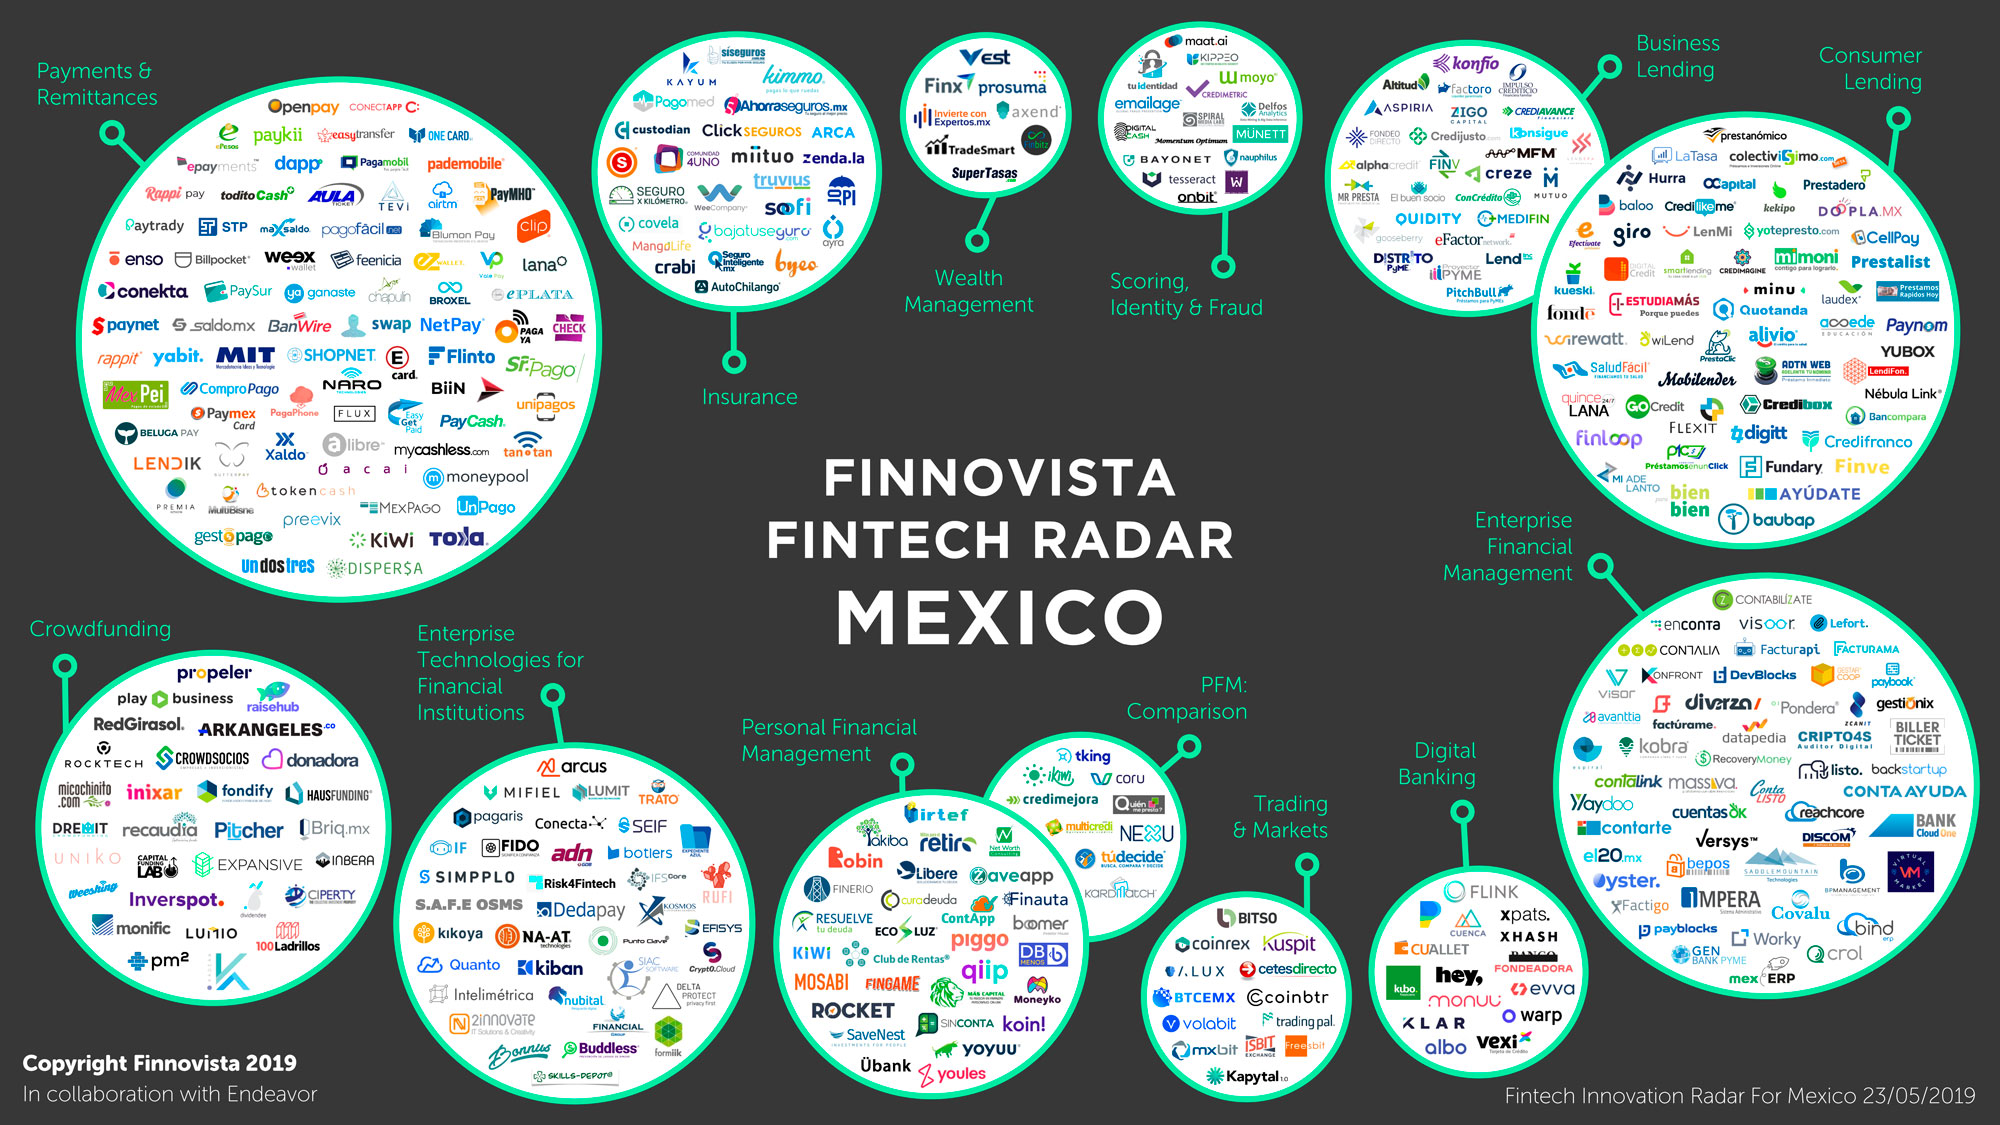 Apptualízate 2012, Desarrollando el Ecosistema Mexicano de Startups